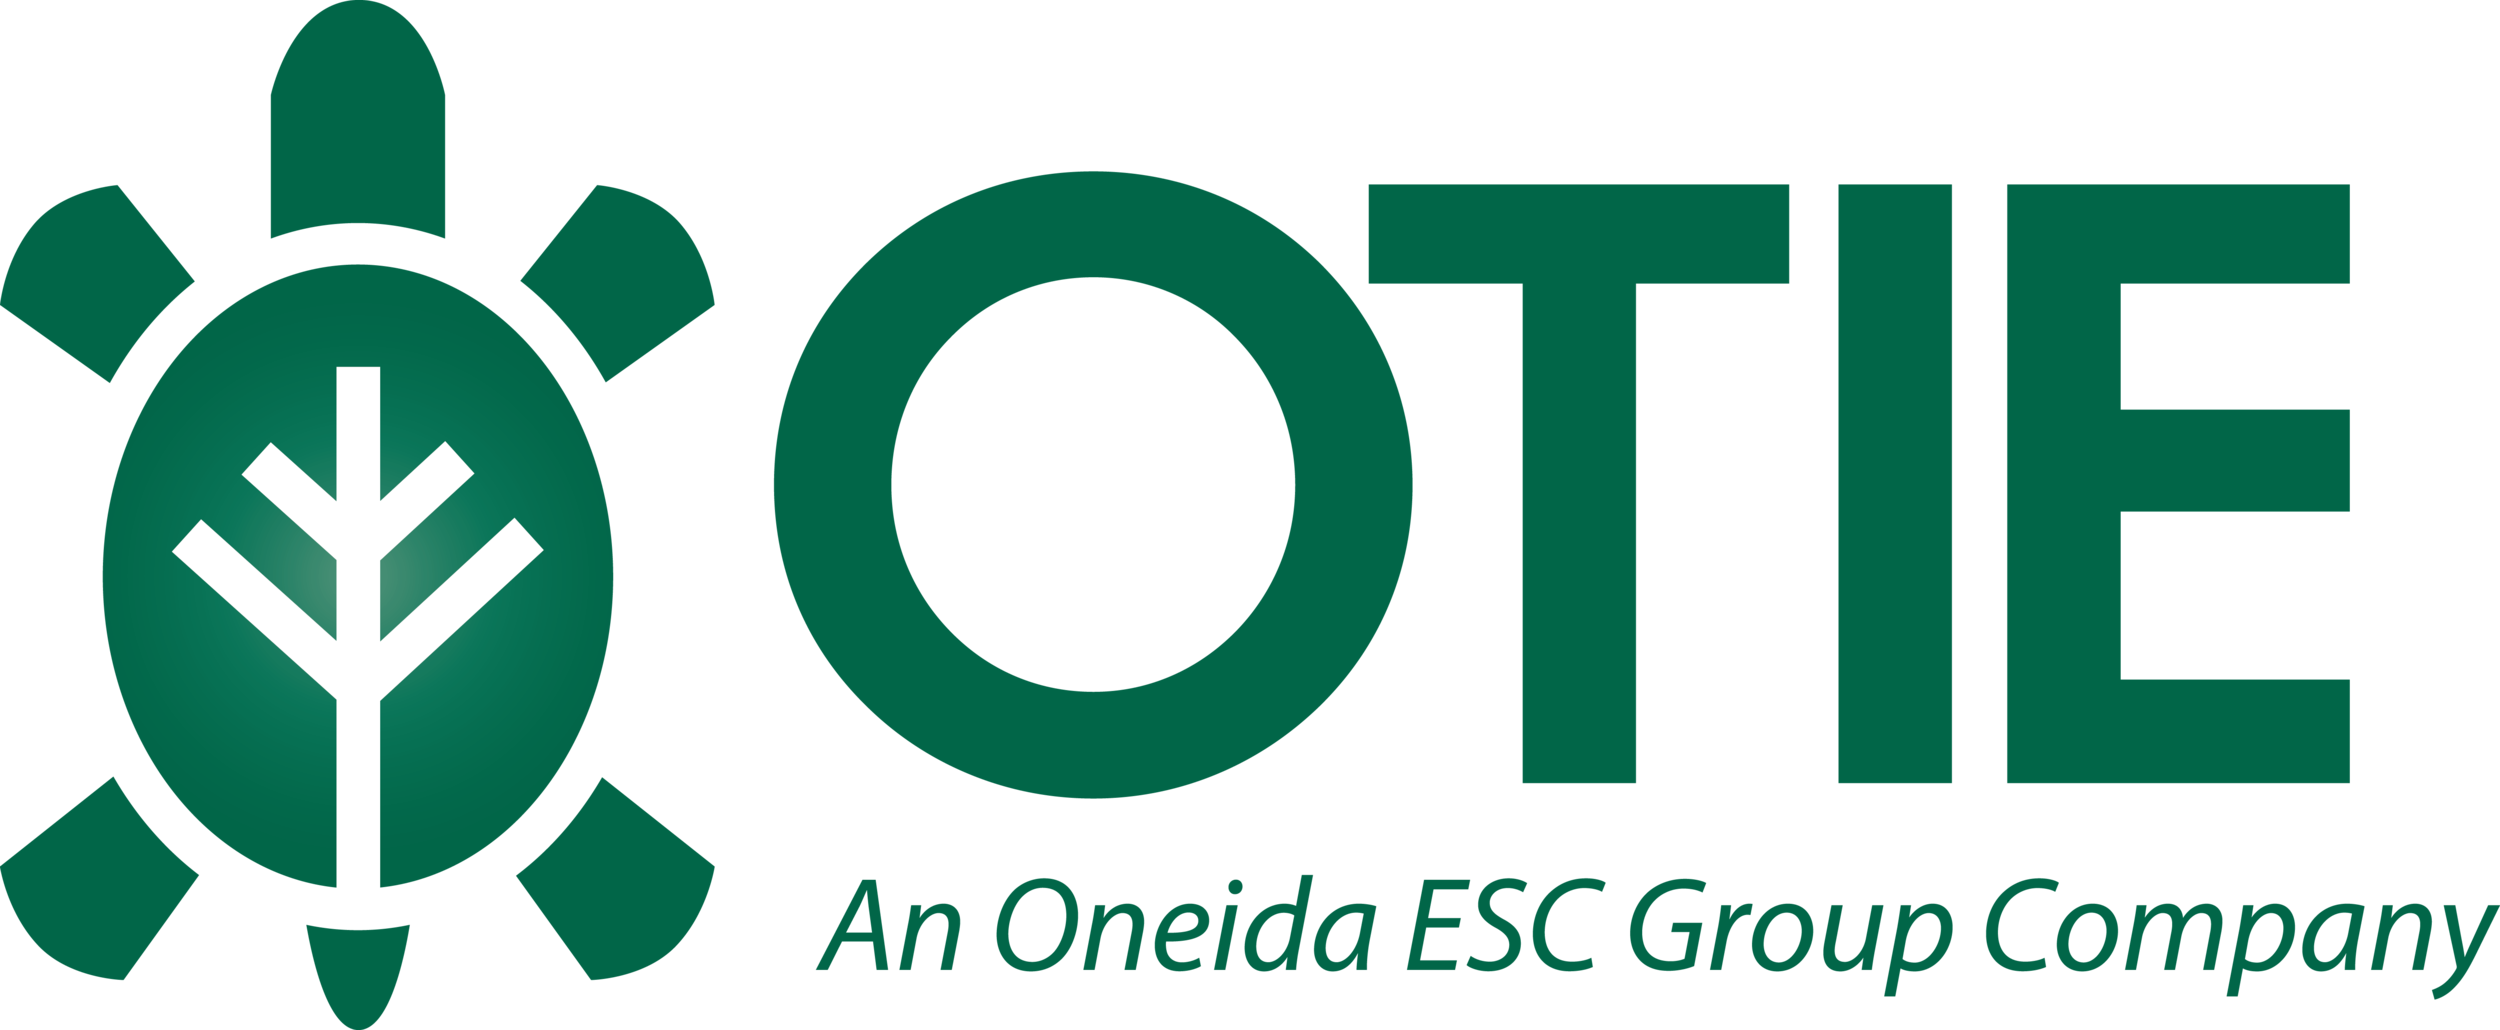 OTIE logo.png